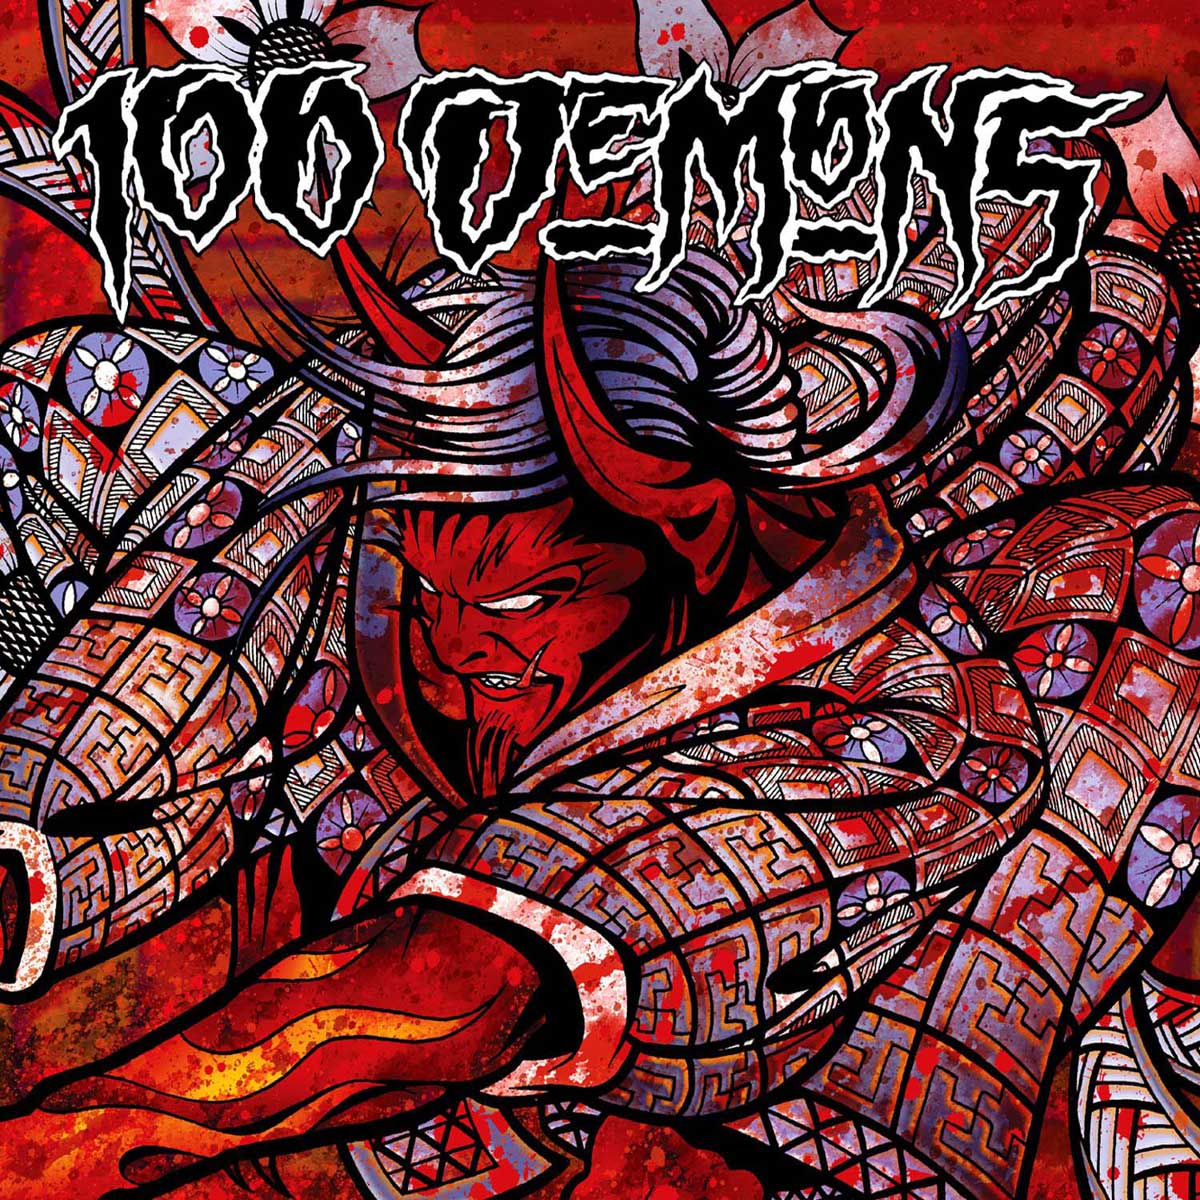 Vinile 100 Demons - 100 Demons NUOVO SIGILLATO, EDIZIONE DEL 23/06/2014 SUBITO DISPONIBILE